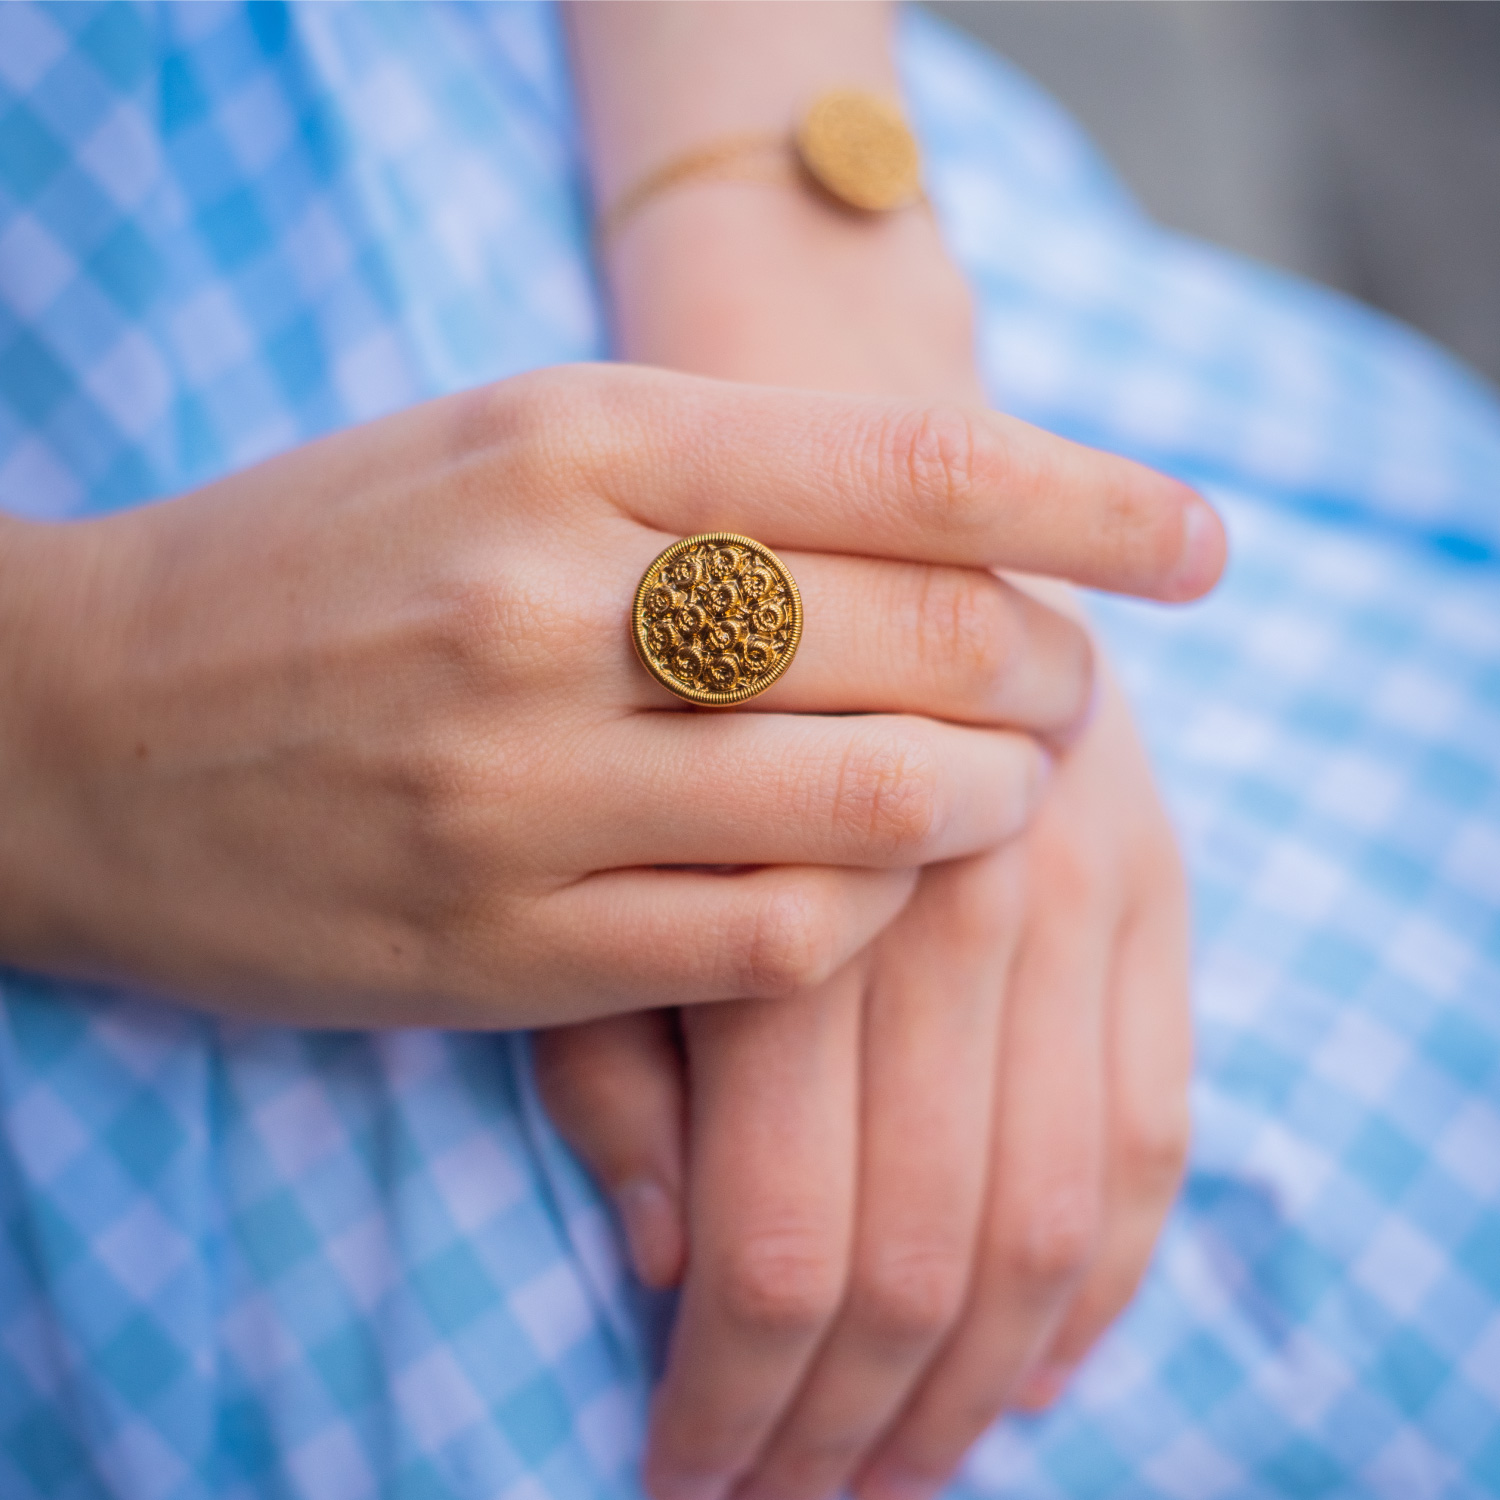 Petite bague Aurore – bouton ancien 1940 – Assuna – bijoux d’inspiration vintage